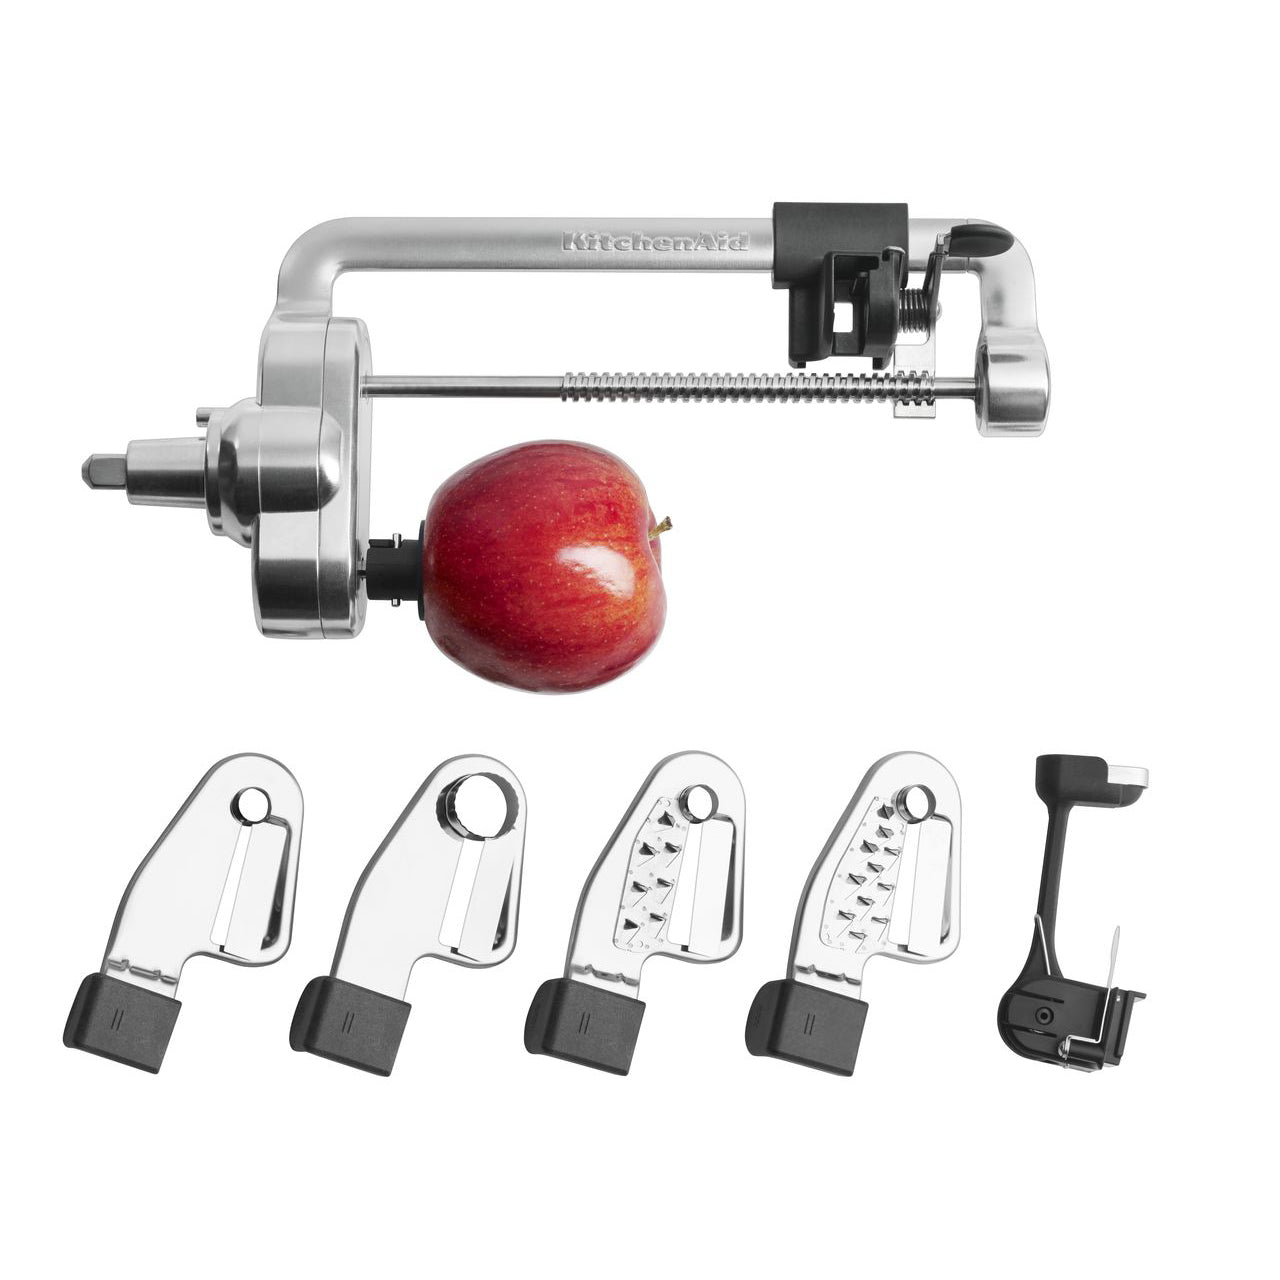 KitchenAid KSM1APC Spiralizer Attachment For Stand Mixer NEW 883049375700